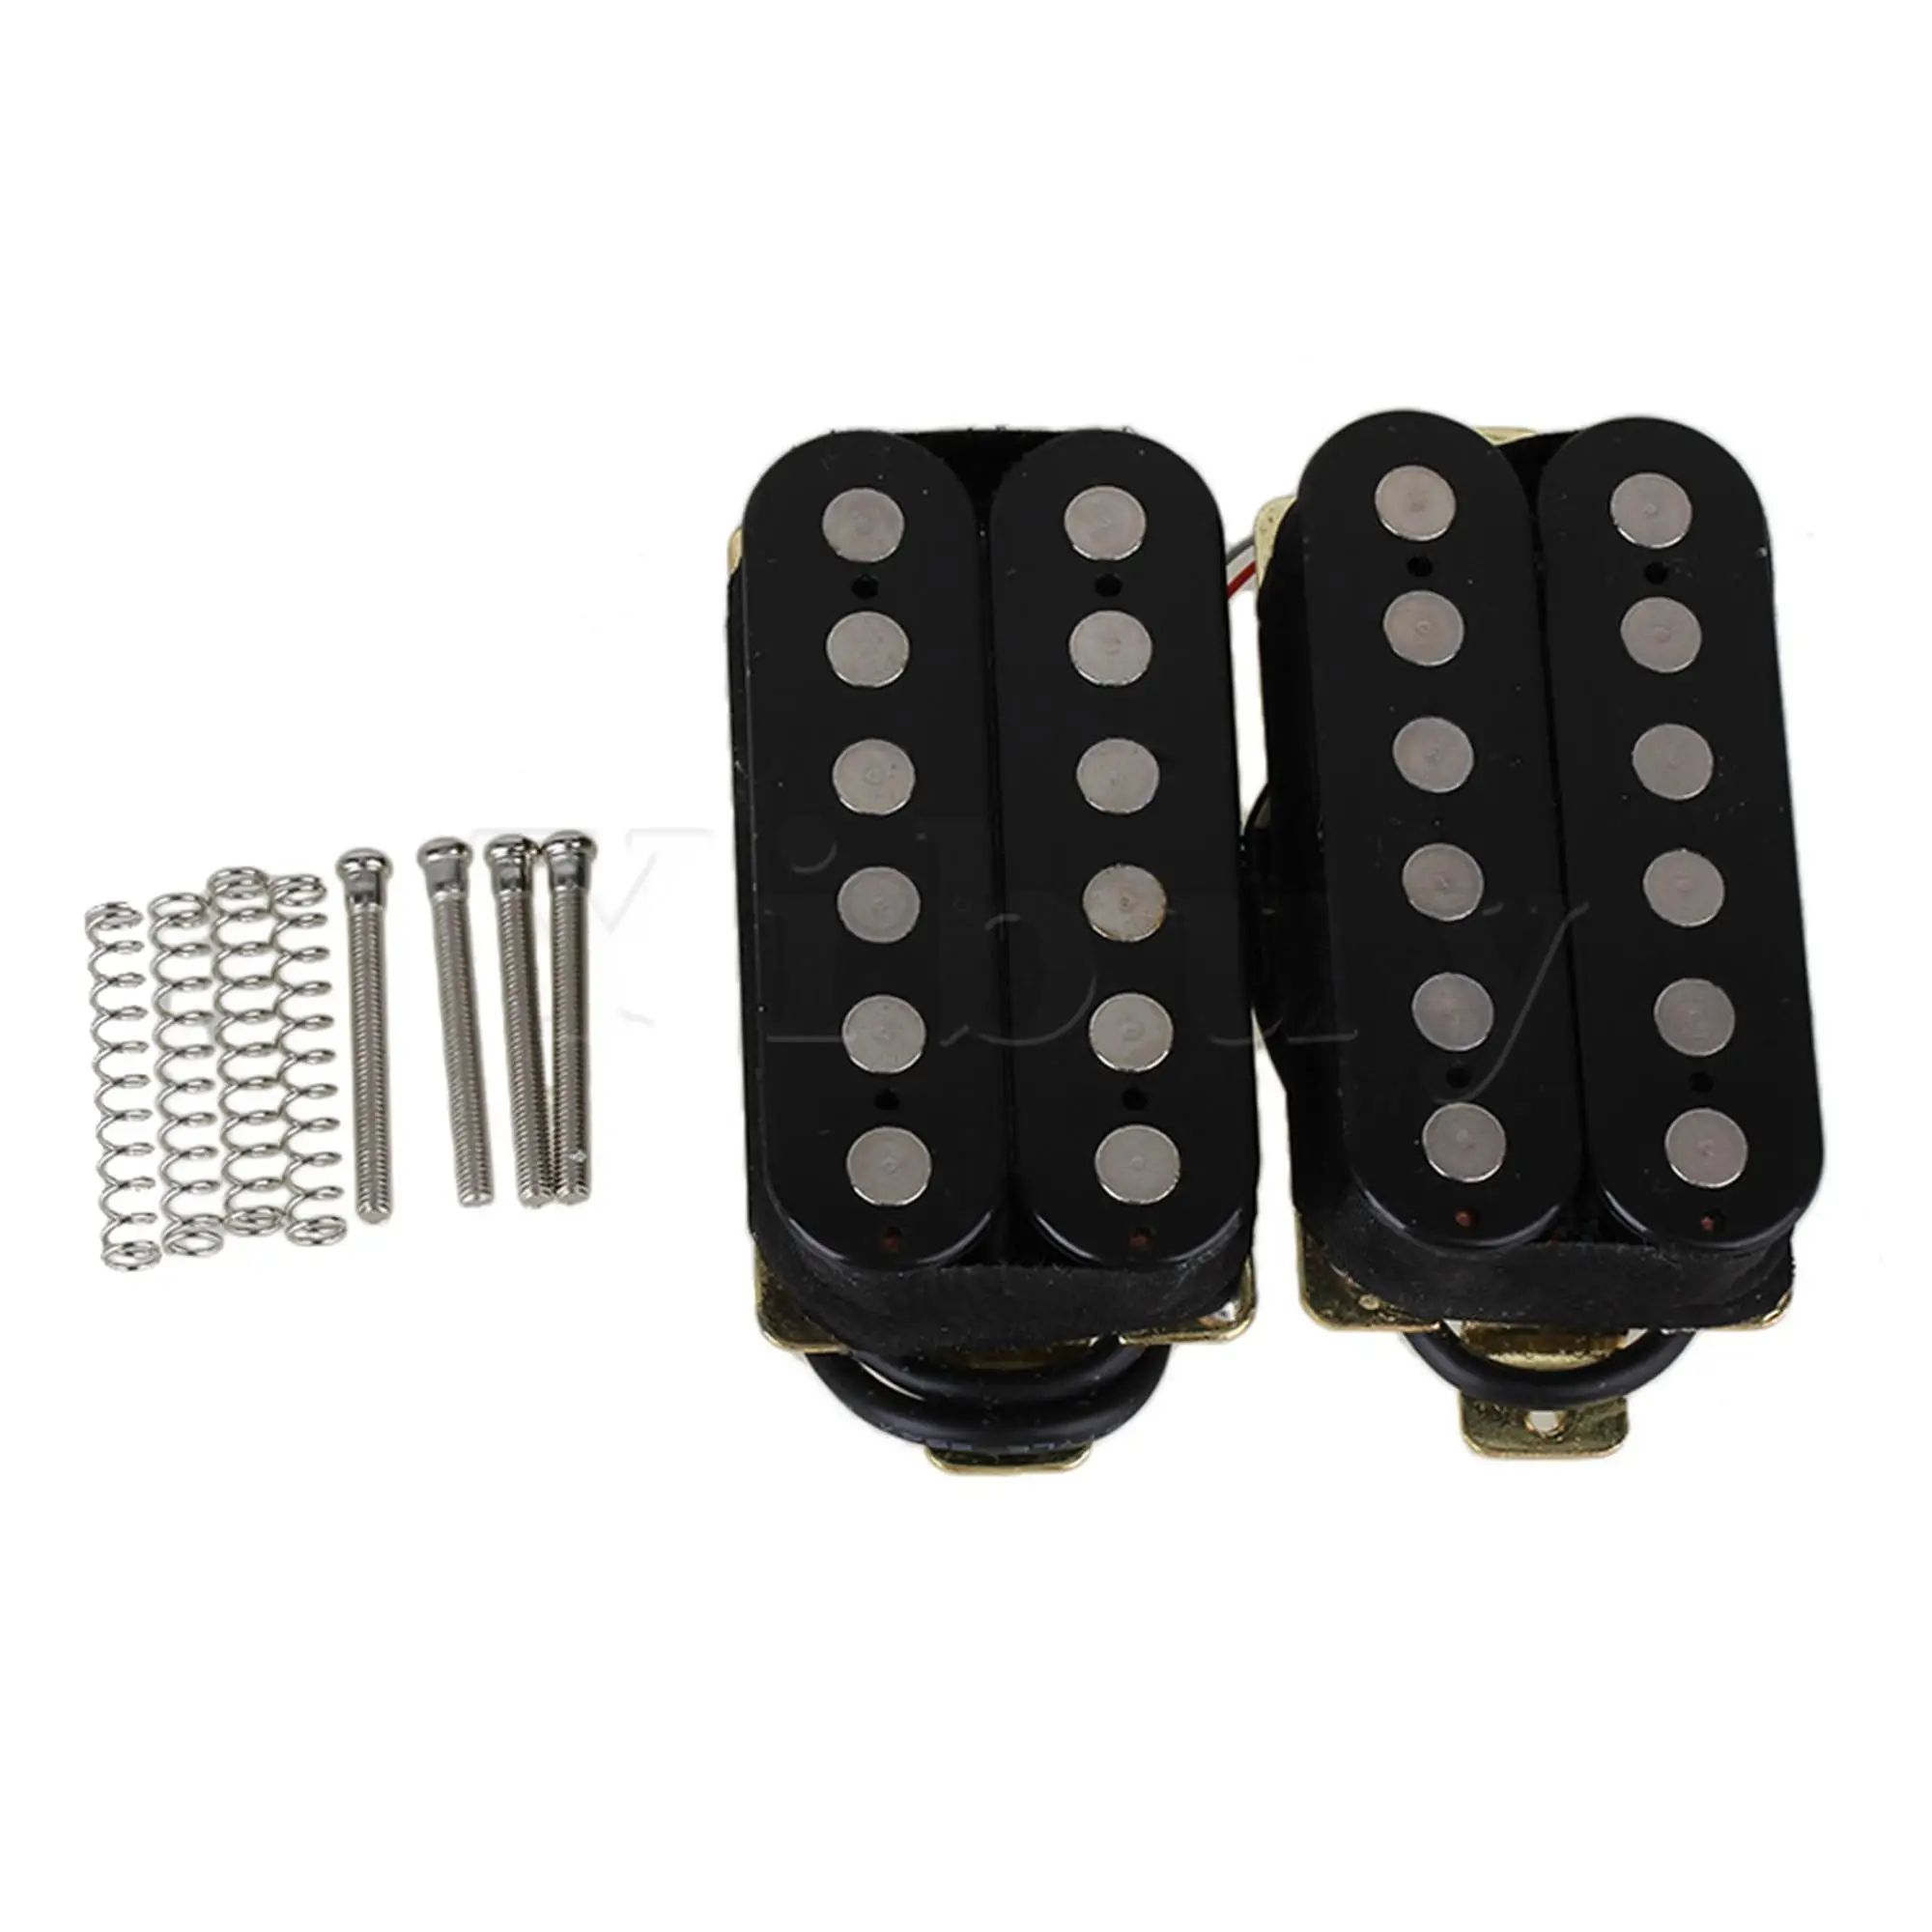 Crna HOC63-BK Metal Kit Звукоснимателей za električnu gitaru sa Dual Coil Humbucker Set